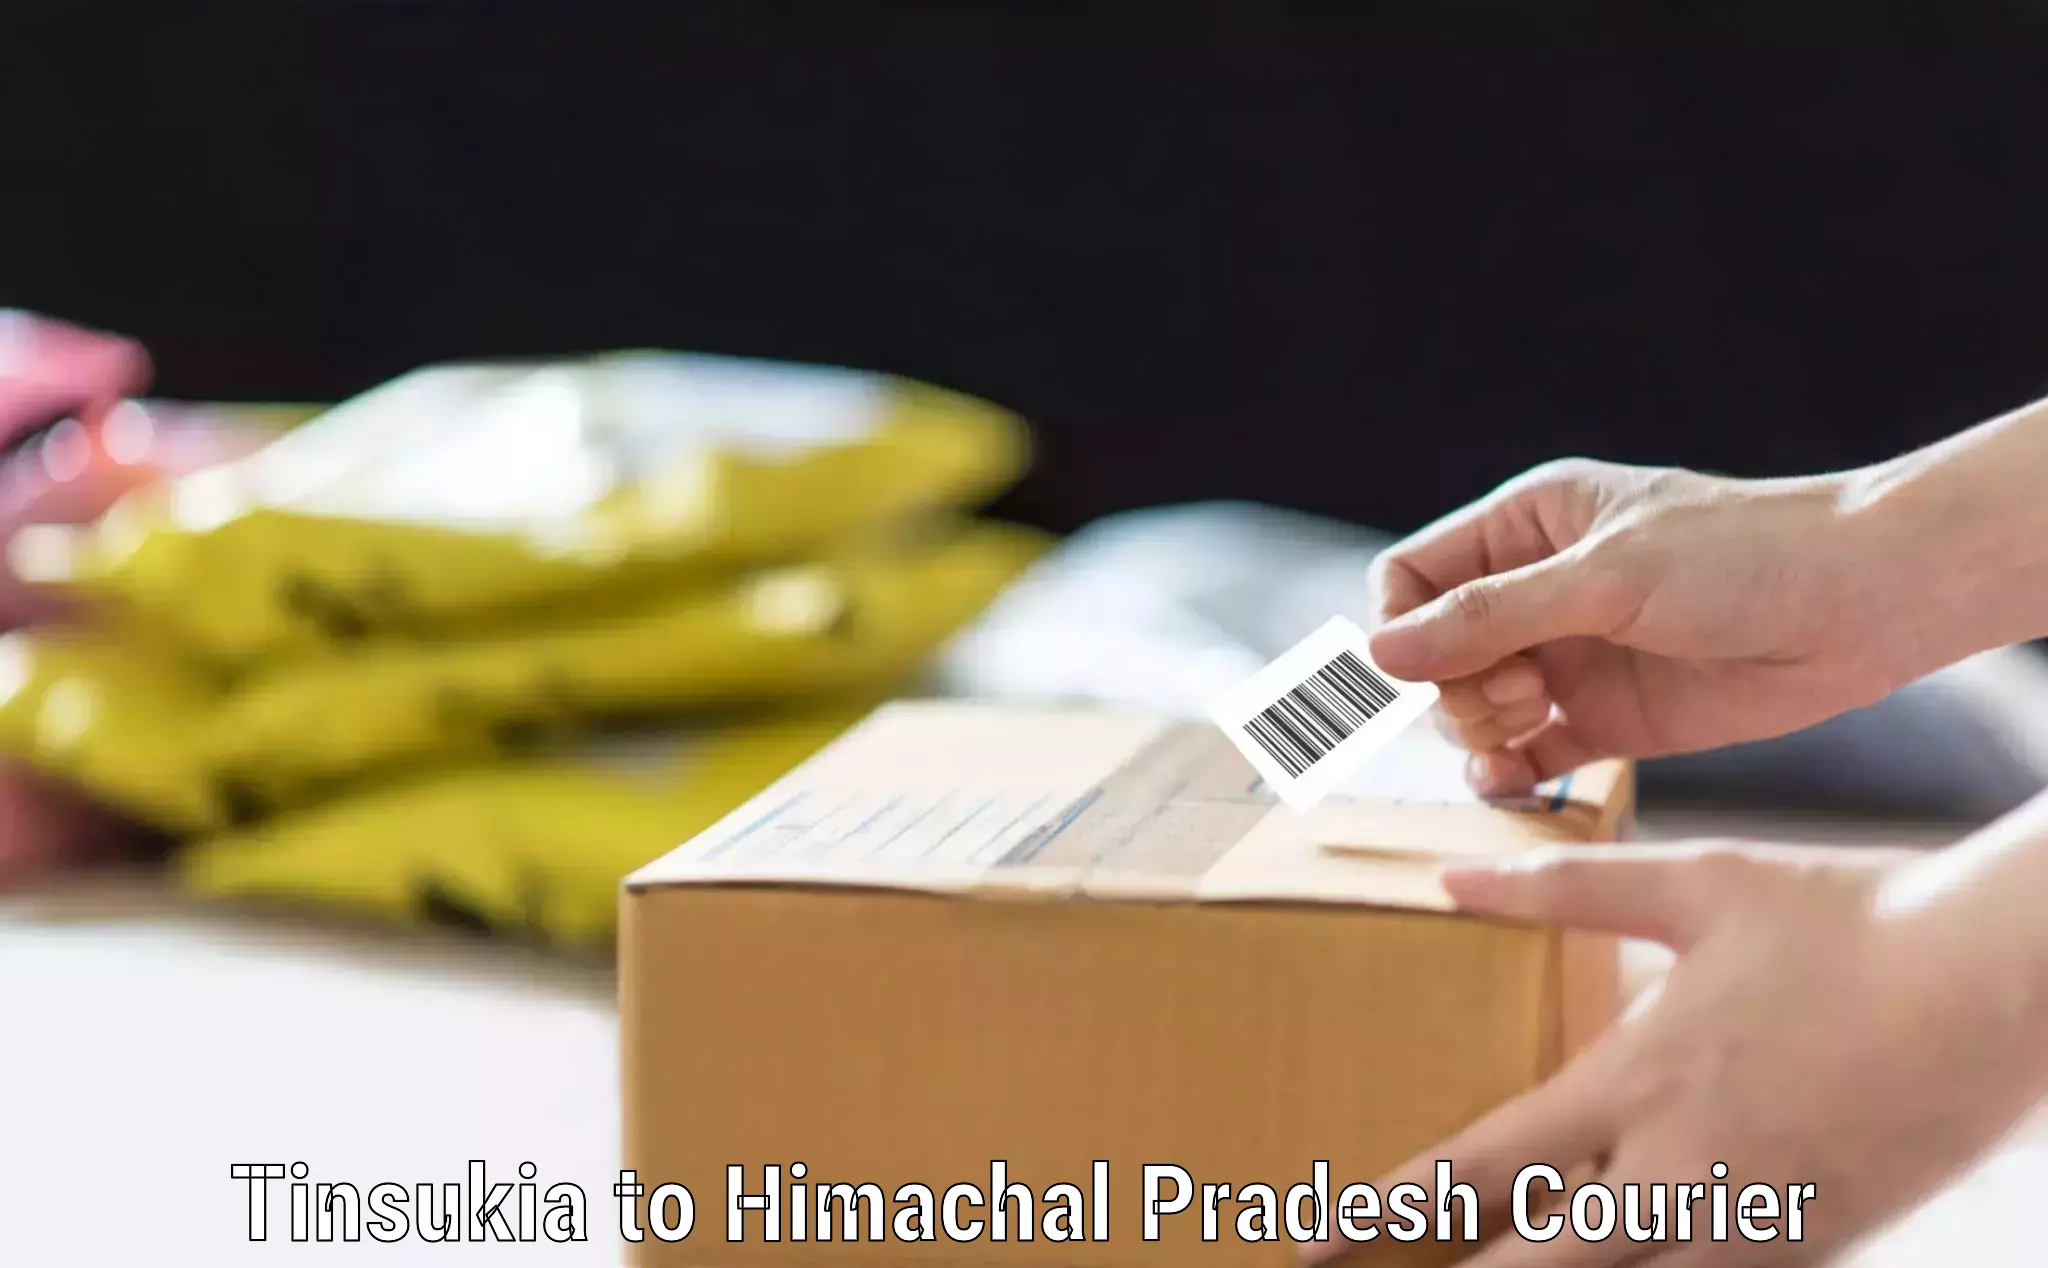 Baggage courier advice Tinsukia to Himachal Pradesh